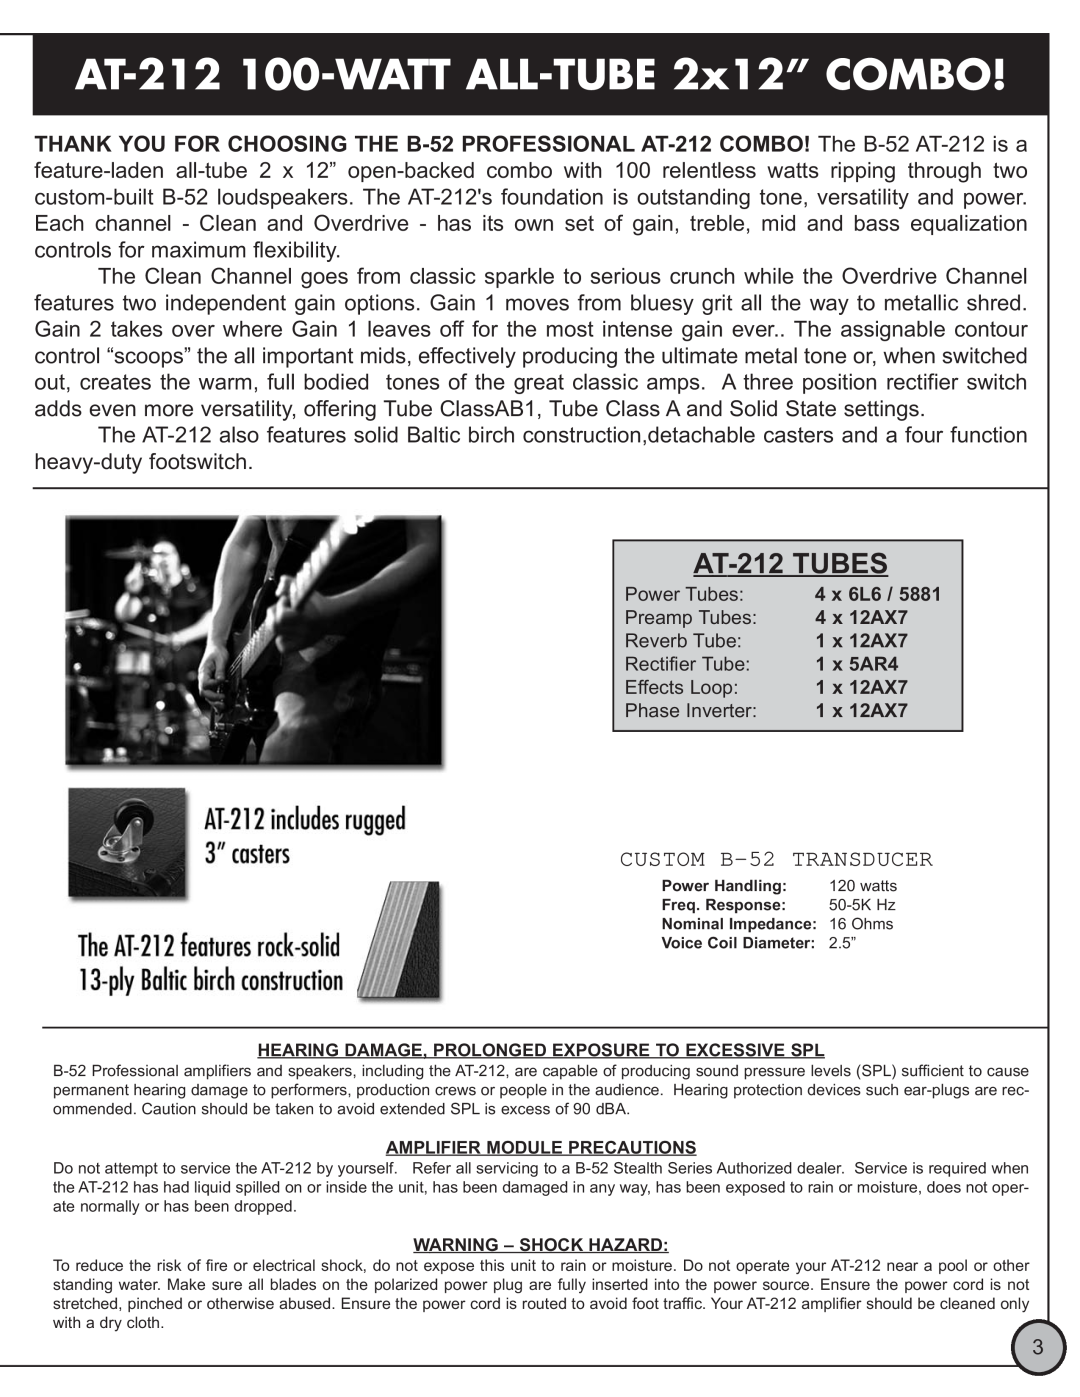 ETI Sound Systems, INC manual AT-212 100-WATT ALL-TUBE2x12” COMBO, AT-212TUBES 